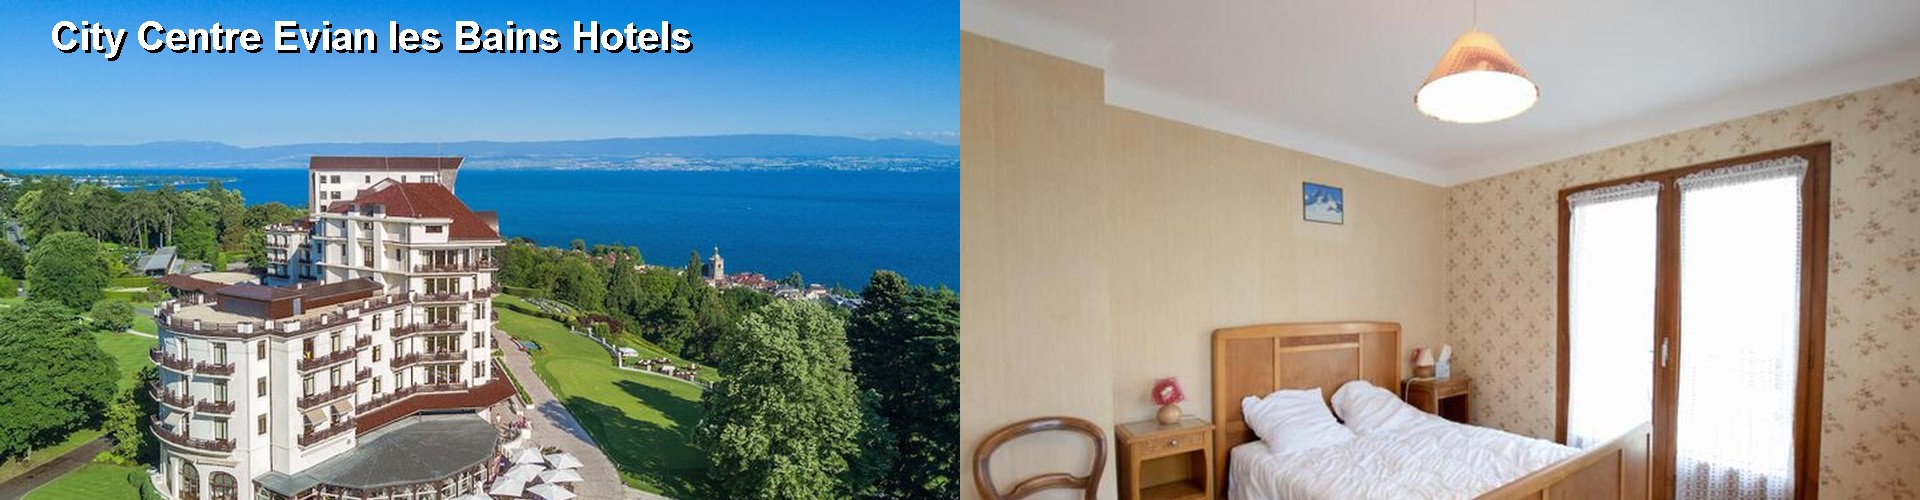 4 Best Hotels near City Centre Evian les Bains